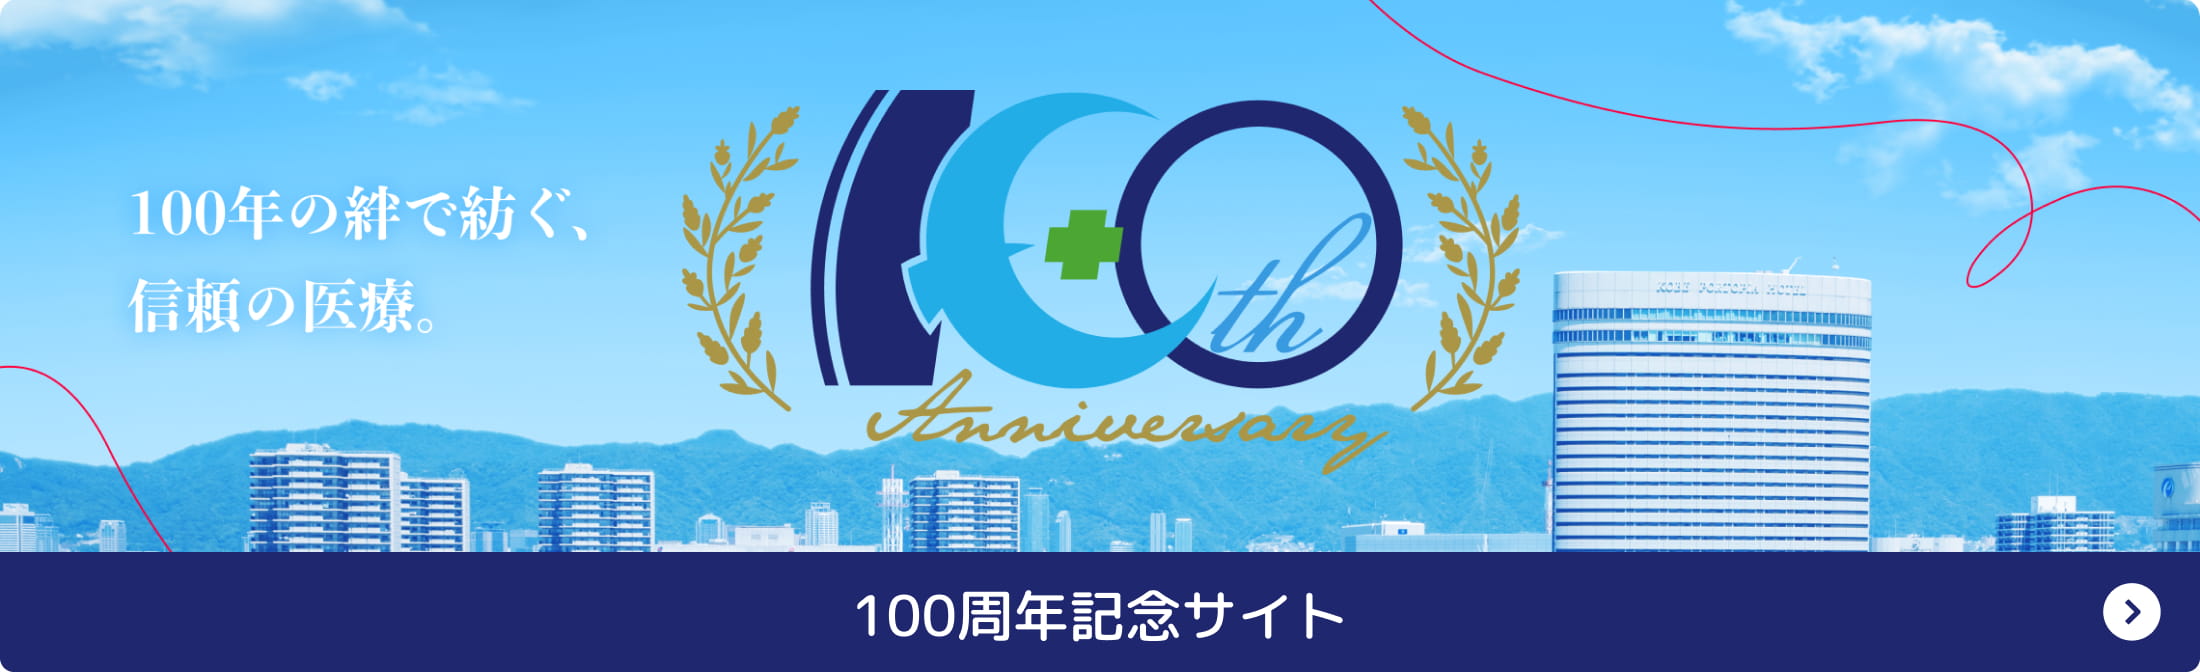 100th anniversary site